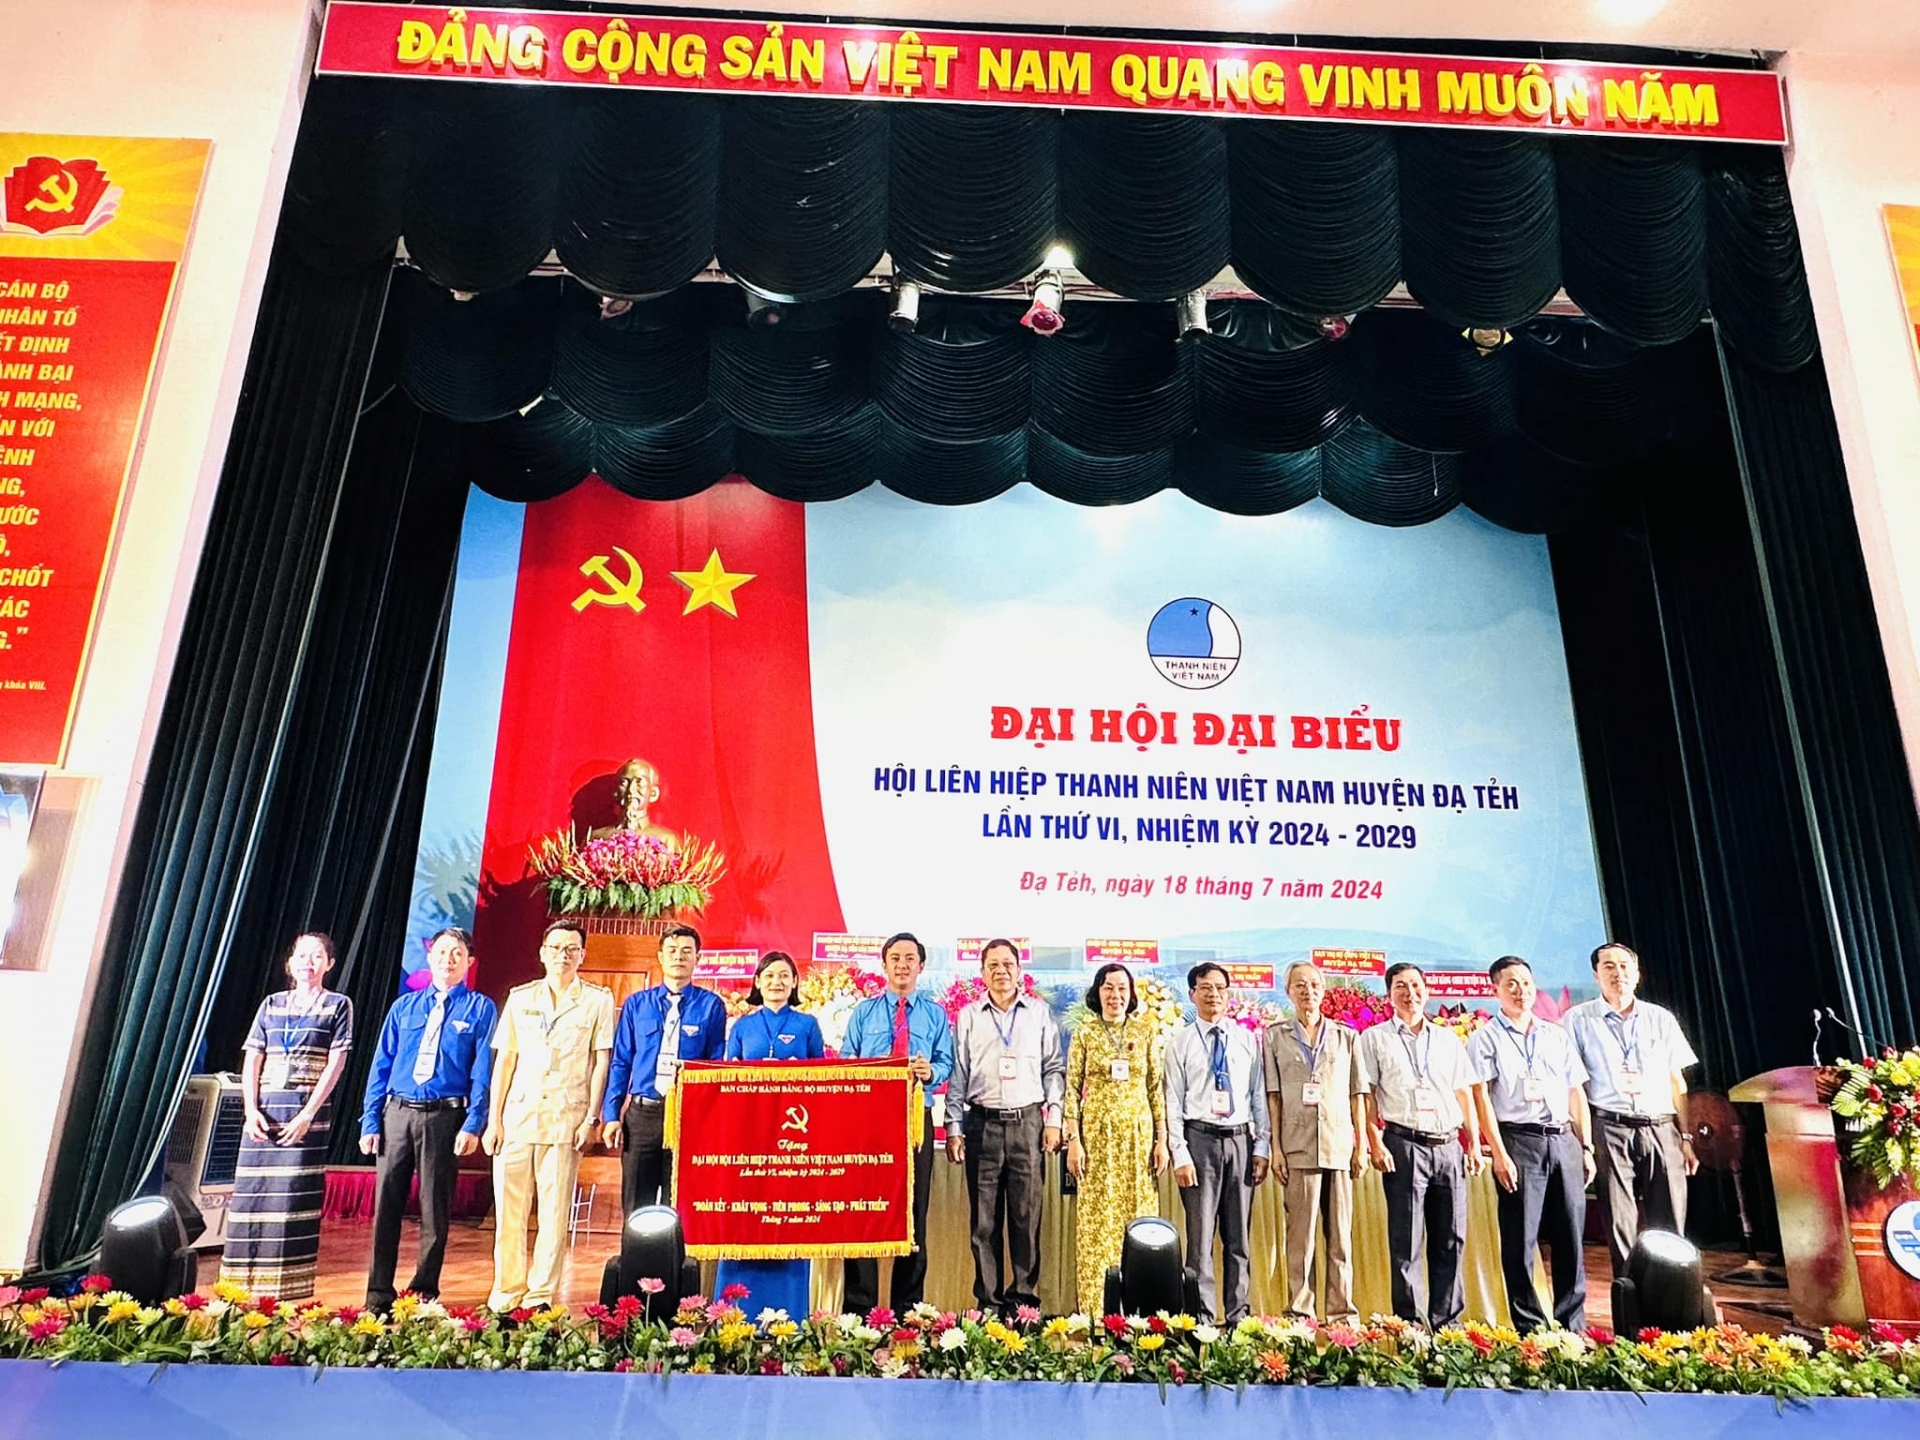 Lãnh đạo huyện Đạ Tẻh trao bức trướng cho Hội LHTN Việt Nam huyện. 